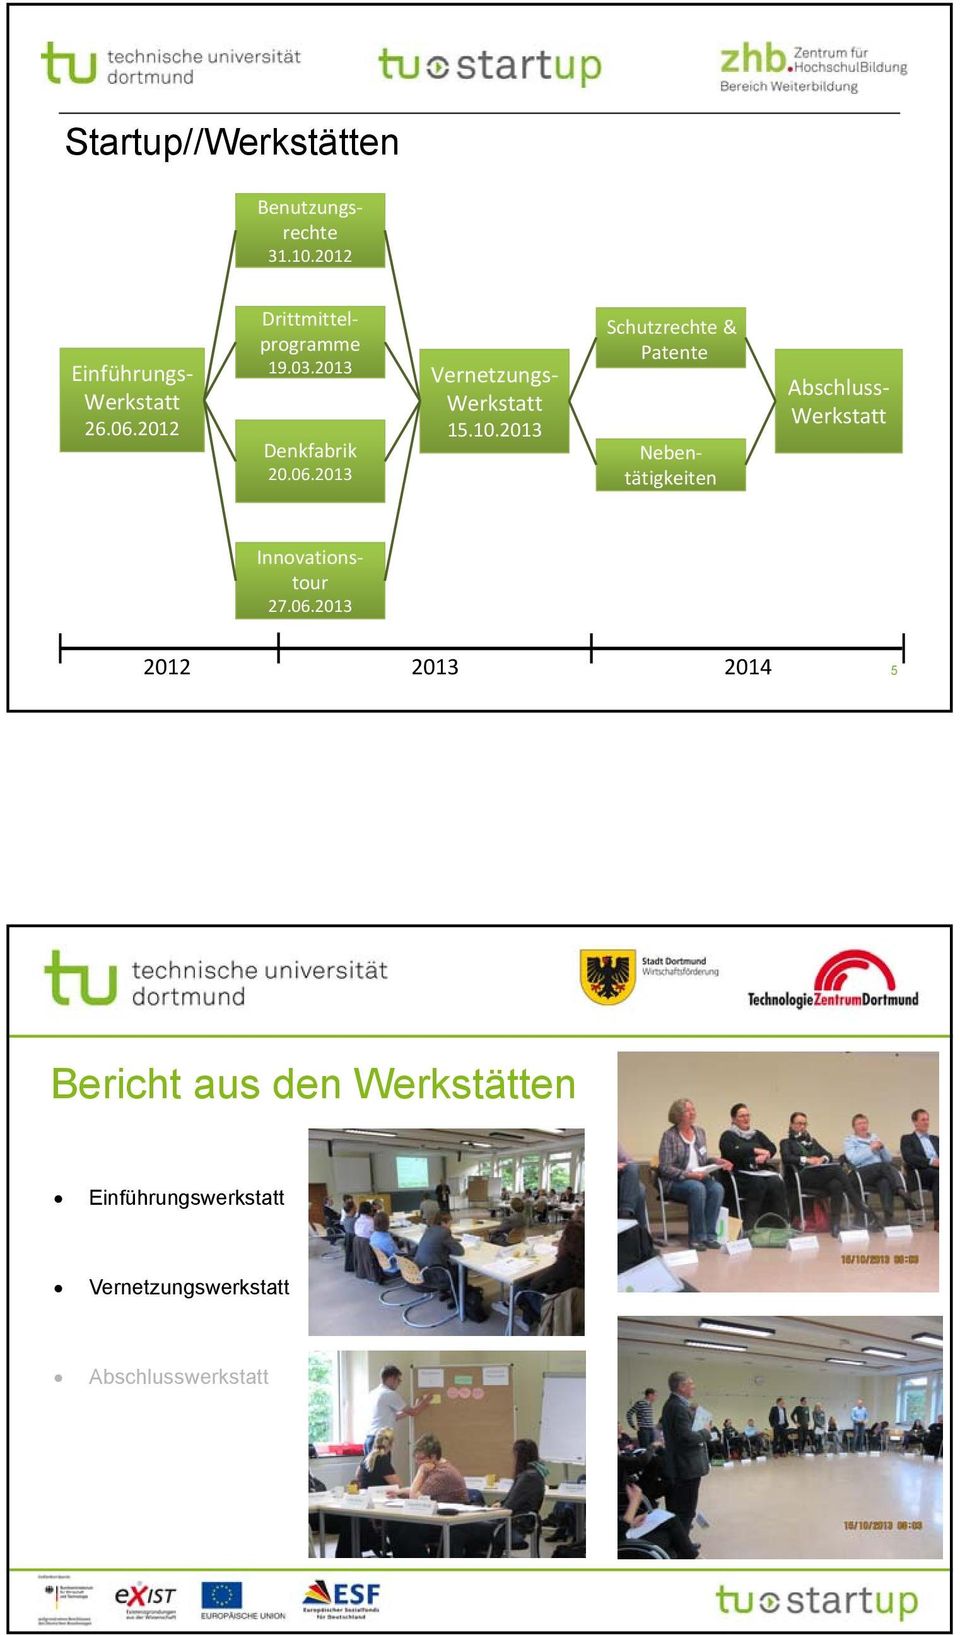 2013 Schutzrechte & Patente Nebentätigkeiten Abschluss Werkstatt Innovationstour 27.06.